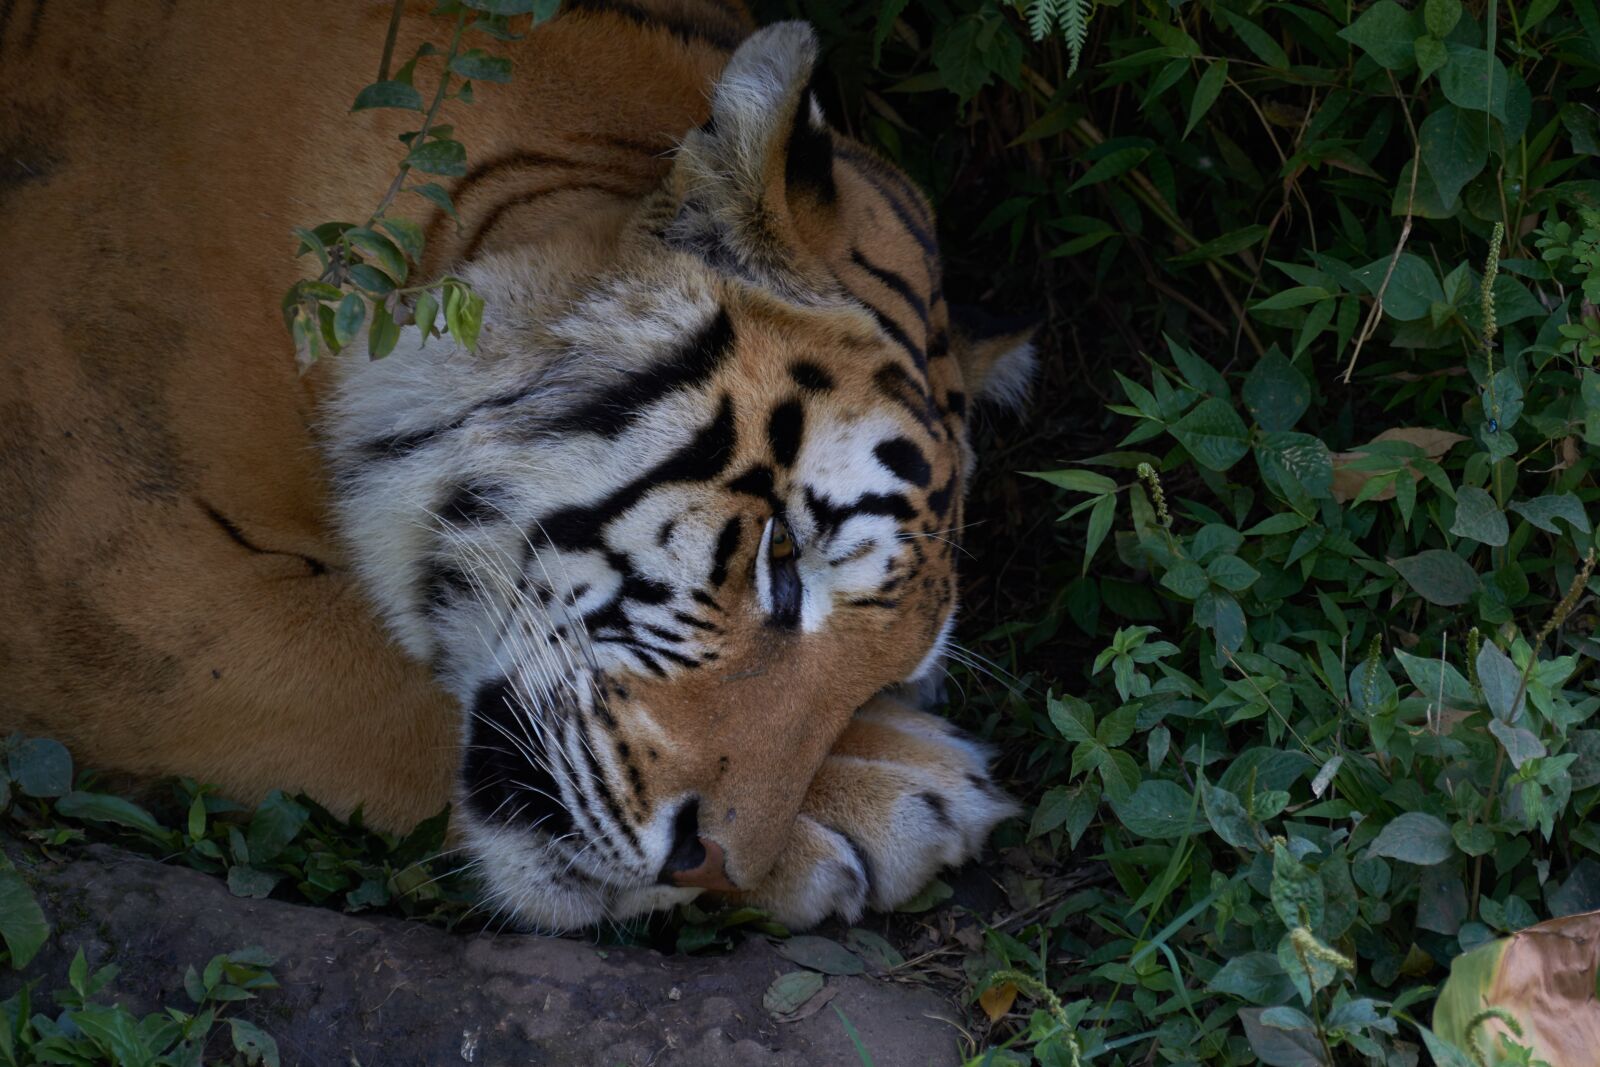 Nikon AF-S VR Zoom-Nikkor 70-300mm f/4.5-5.6G IF-ED sample photo. Tiger, animal, predator photography